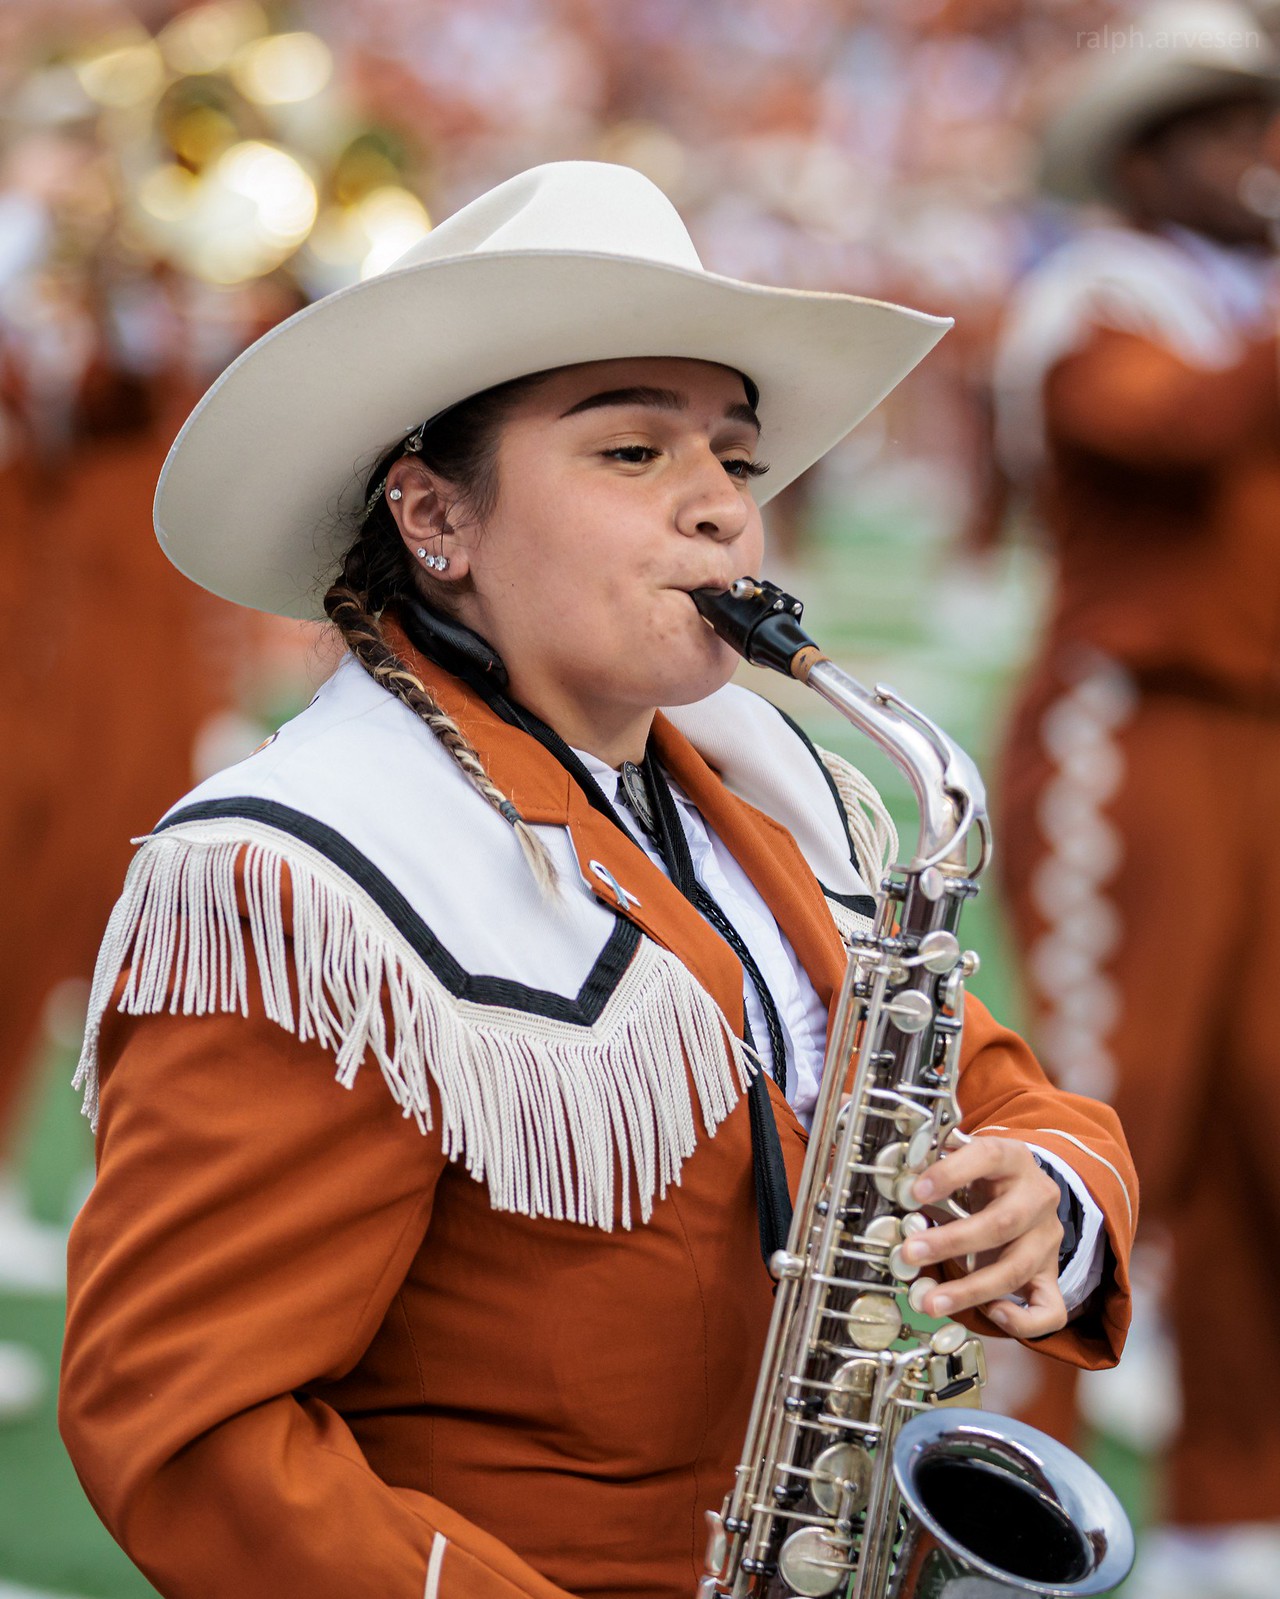 Texas Longhorns | Texas Review | Ralph Arvesen